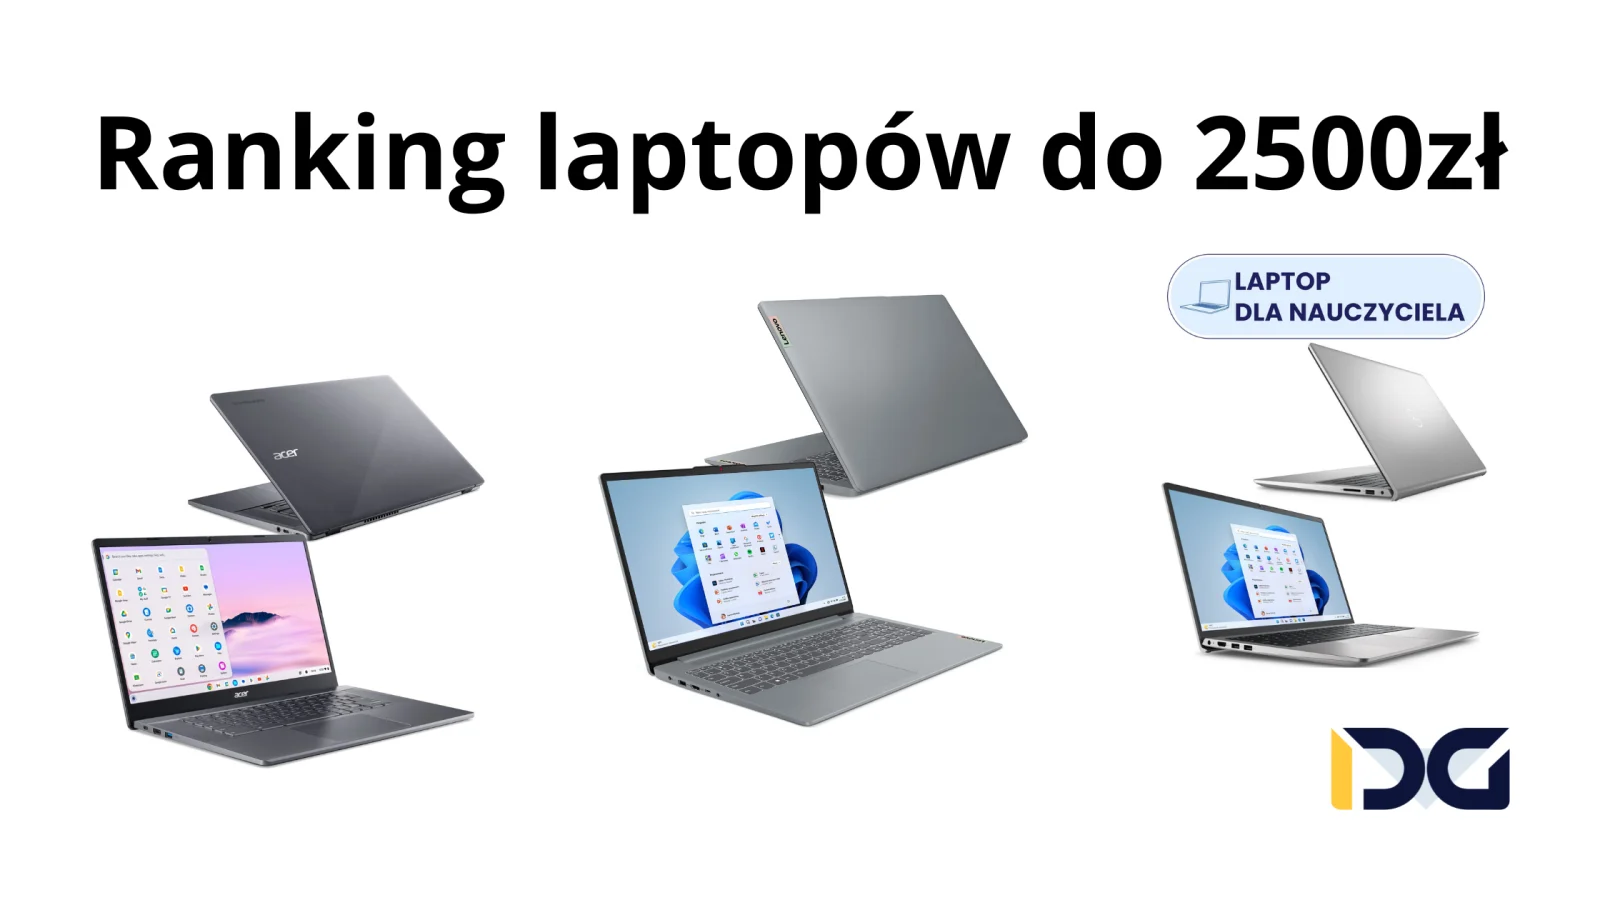 Ranking laptopów za 2500zł